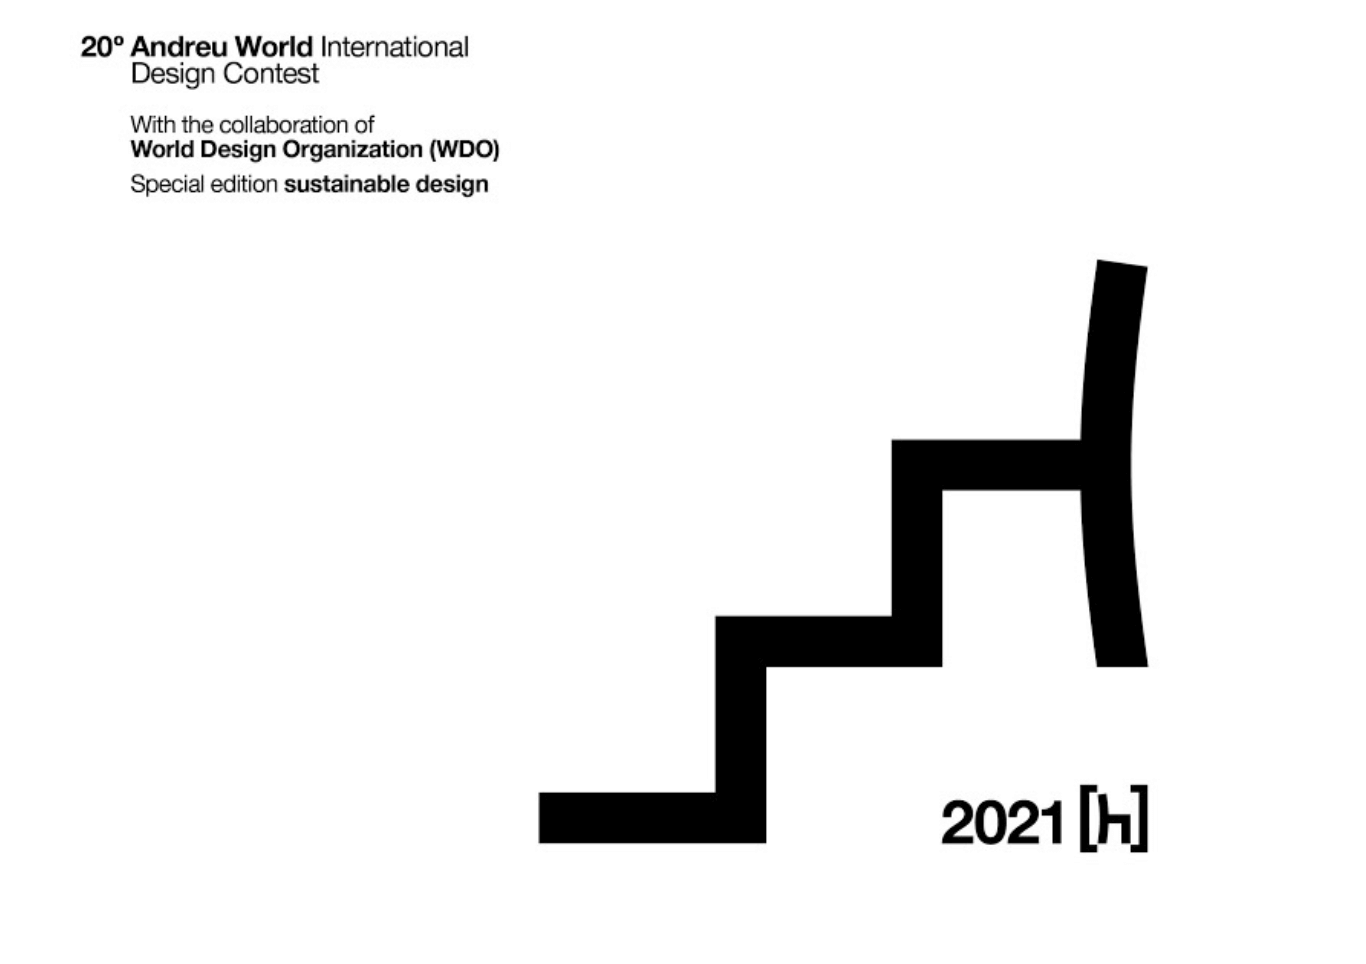 20E ANDREU WORLD INTERNATIONAL DESIGN CONTEST